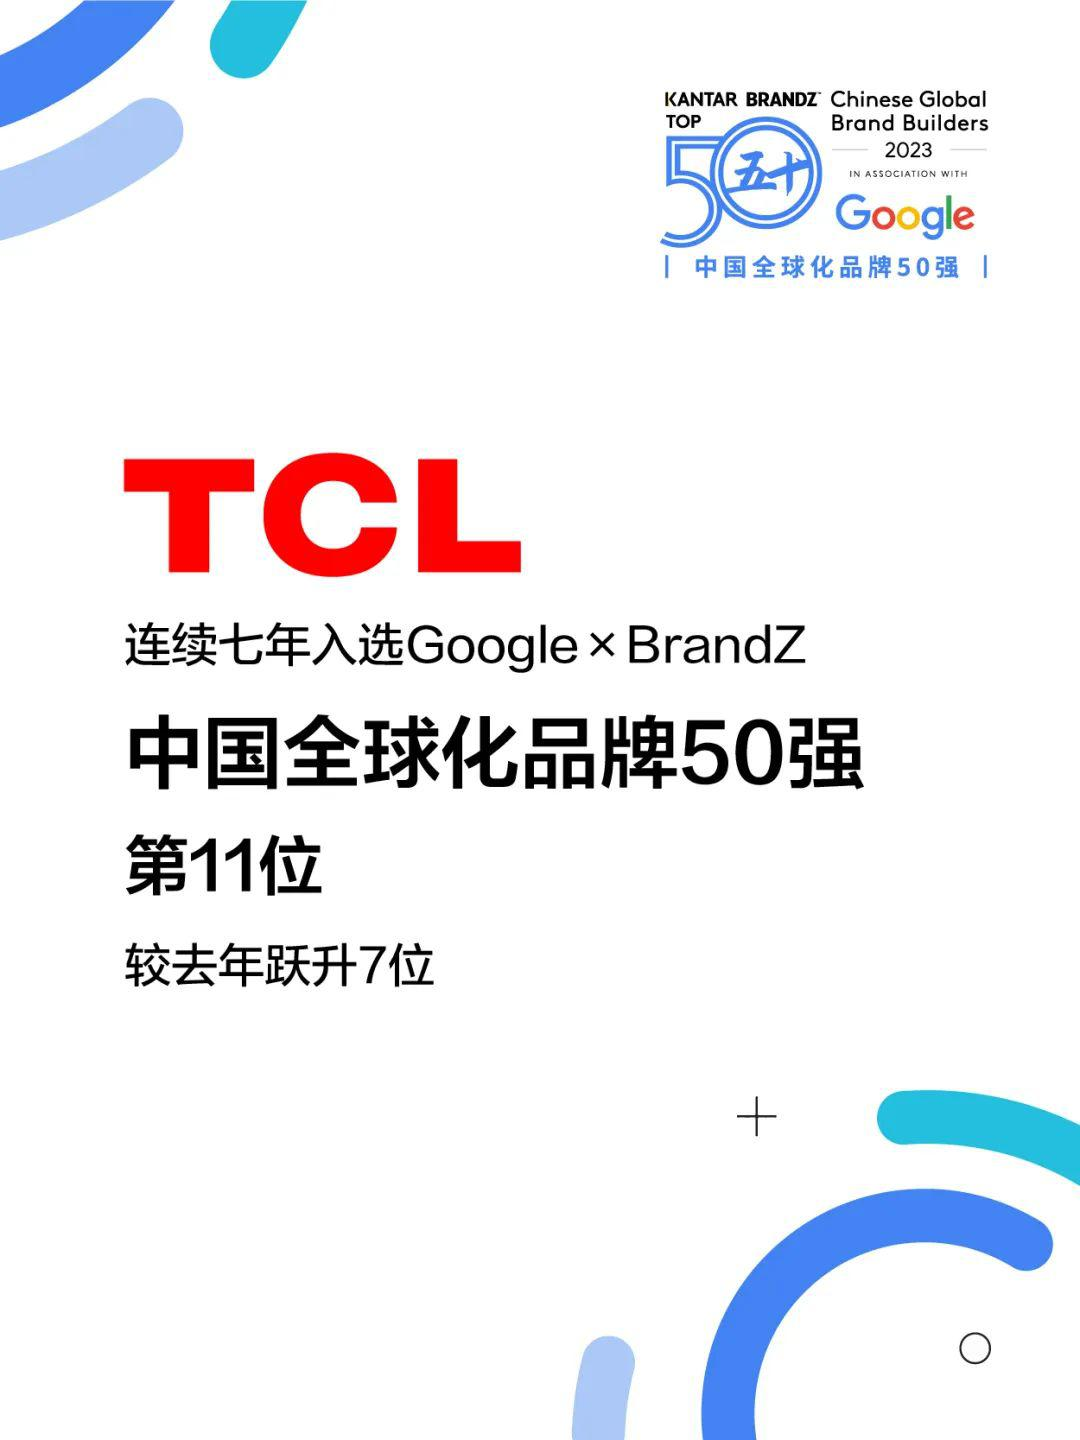 “歪果仁”更中意哪些中国货？日前，谷歌携手全球品牌数据与分析公司凯度发布了《2023中国全球化品牌50强》榜单，其中不乏华为、小米、TCL、长城等大家耳熟能详的...